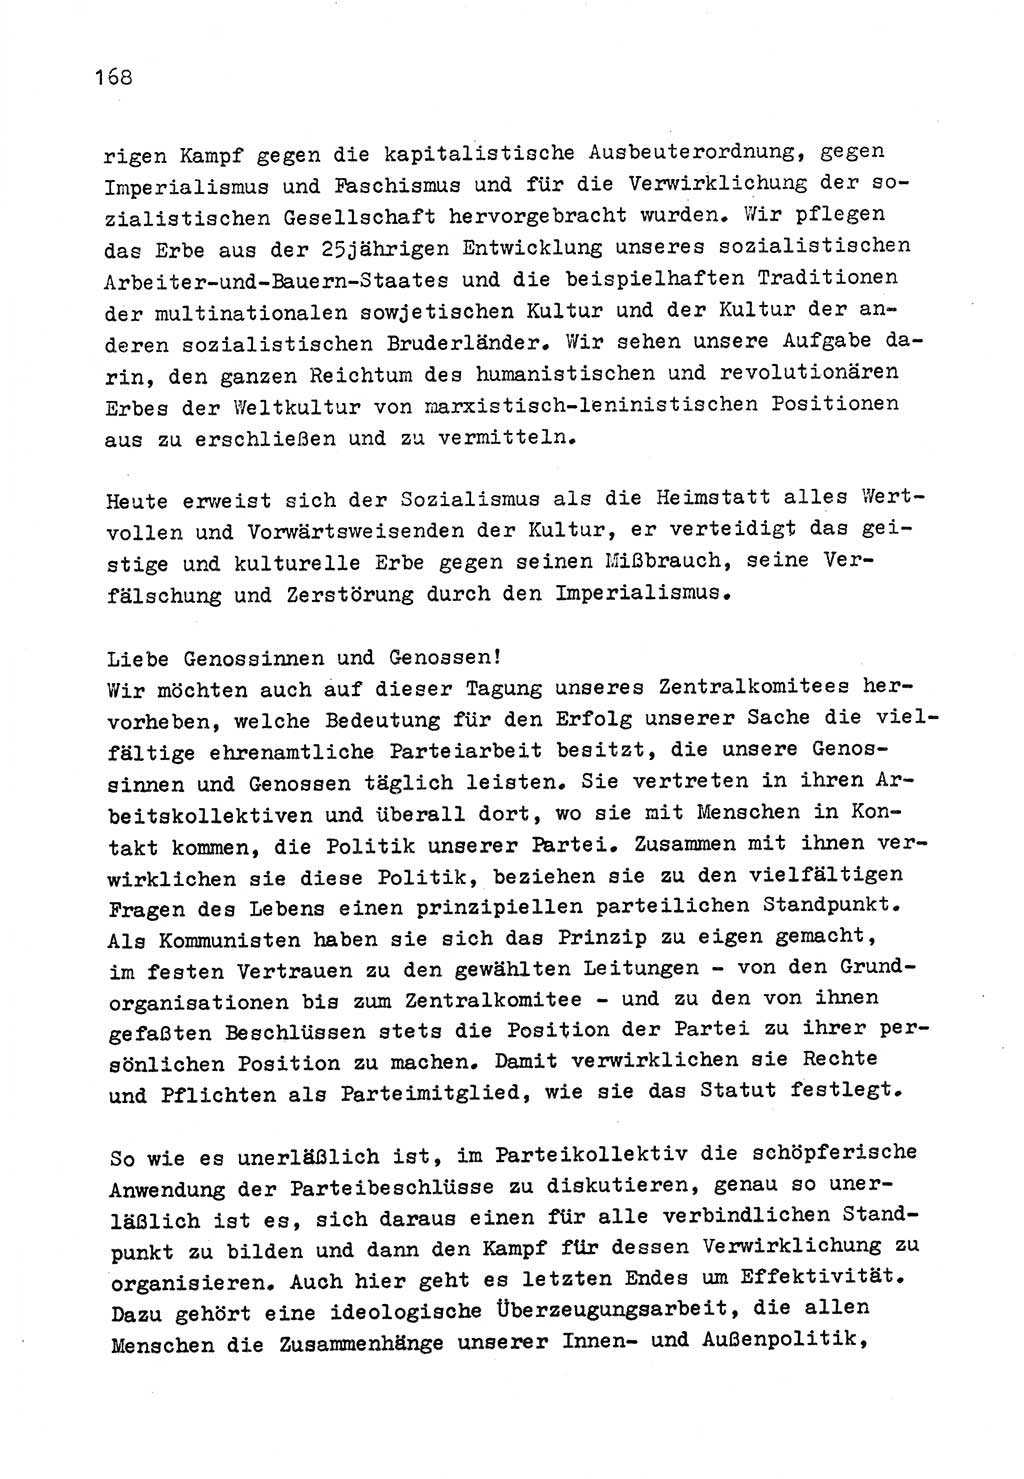 Zu Fragen der Parteiarbeit [Sozialistische Einheitspartei Deutschlands (SED) Deutsche Demokratische Republik (DDR)] 1979, Seite 168 (Fr. PA SED DDR 1979, S. 168)